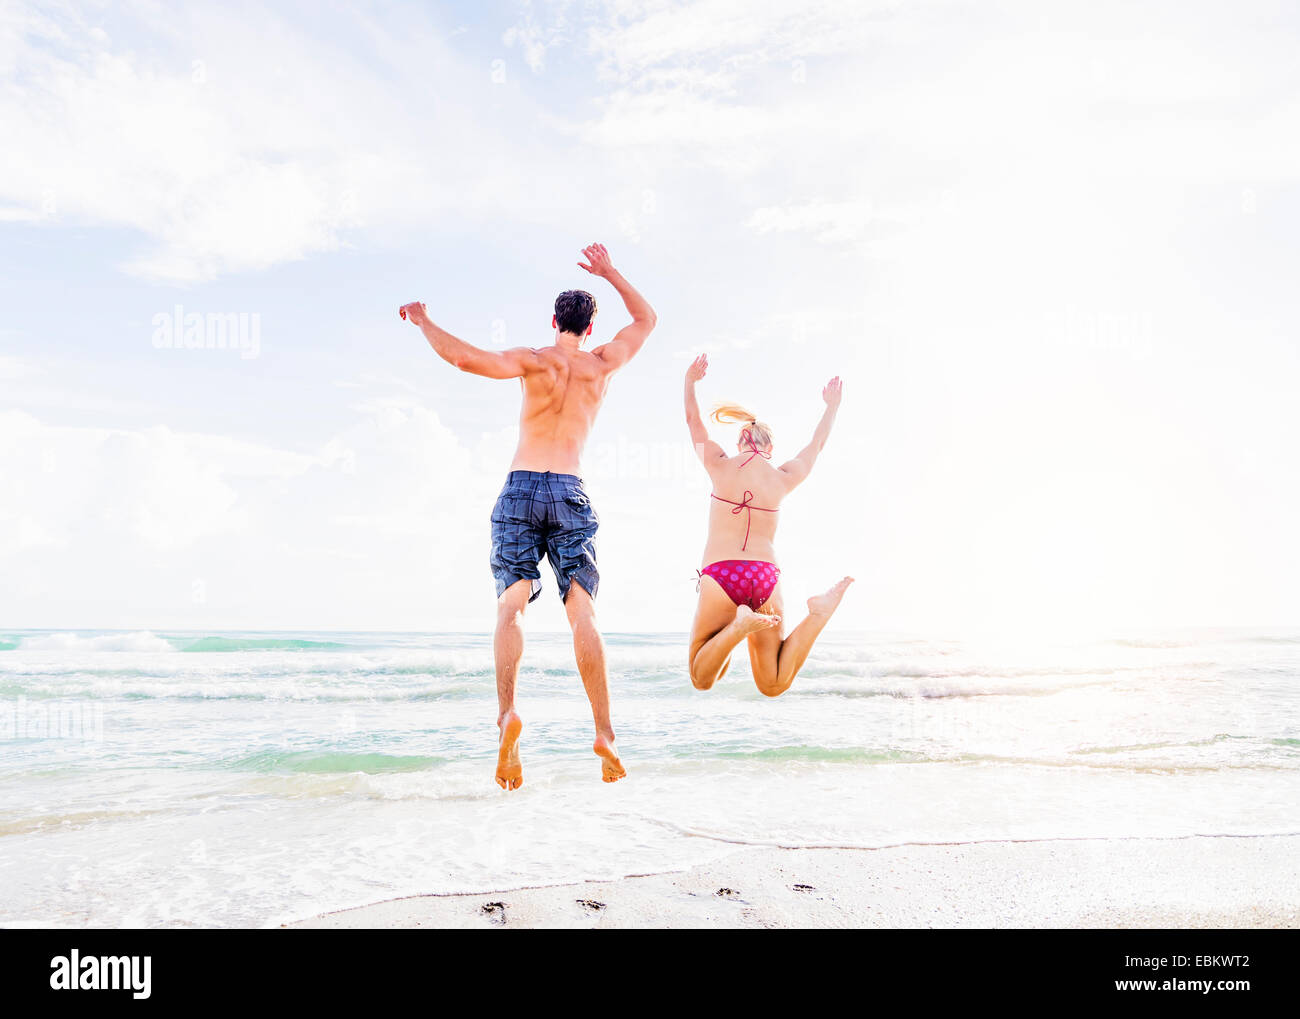 USA, Floride, Jupiter, vue arrière du jeune couple jumping on beach Banque D'Images